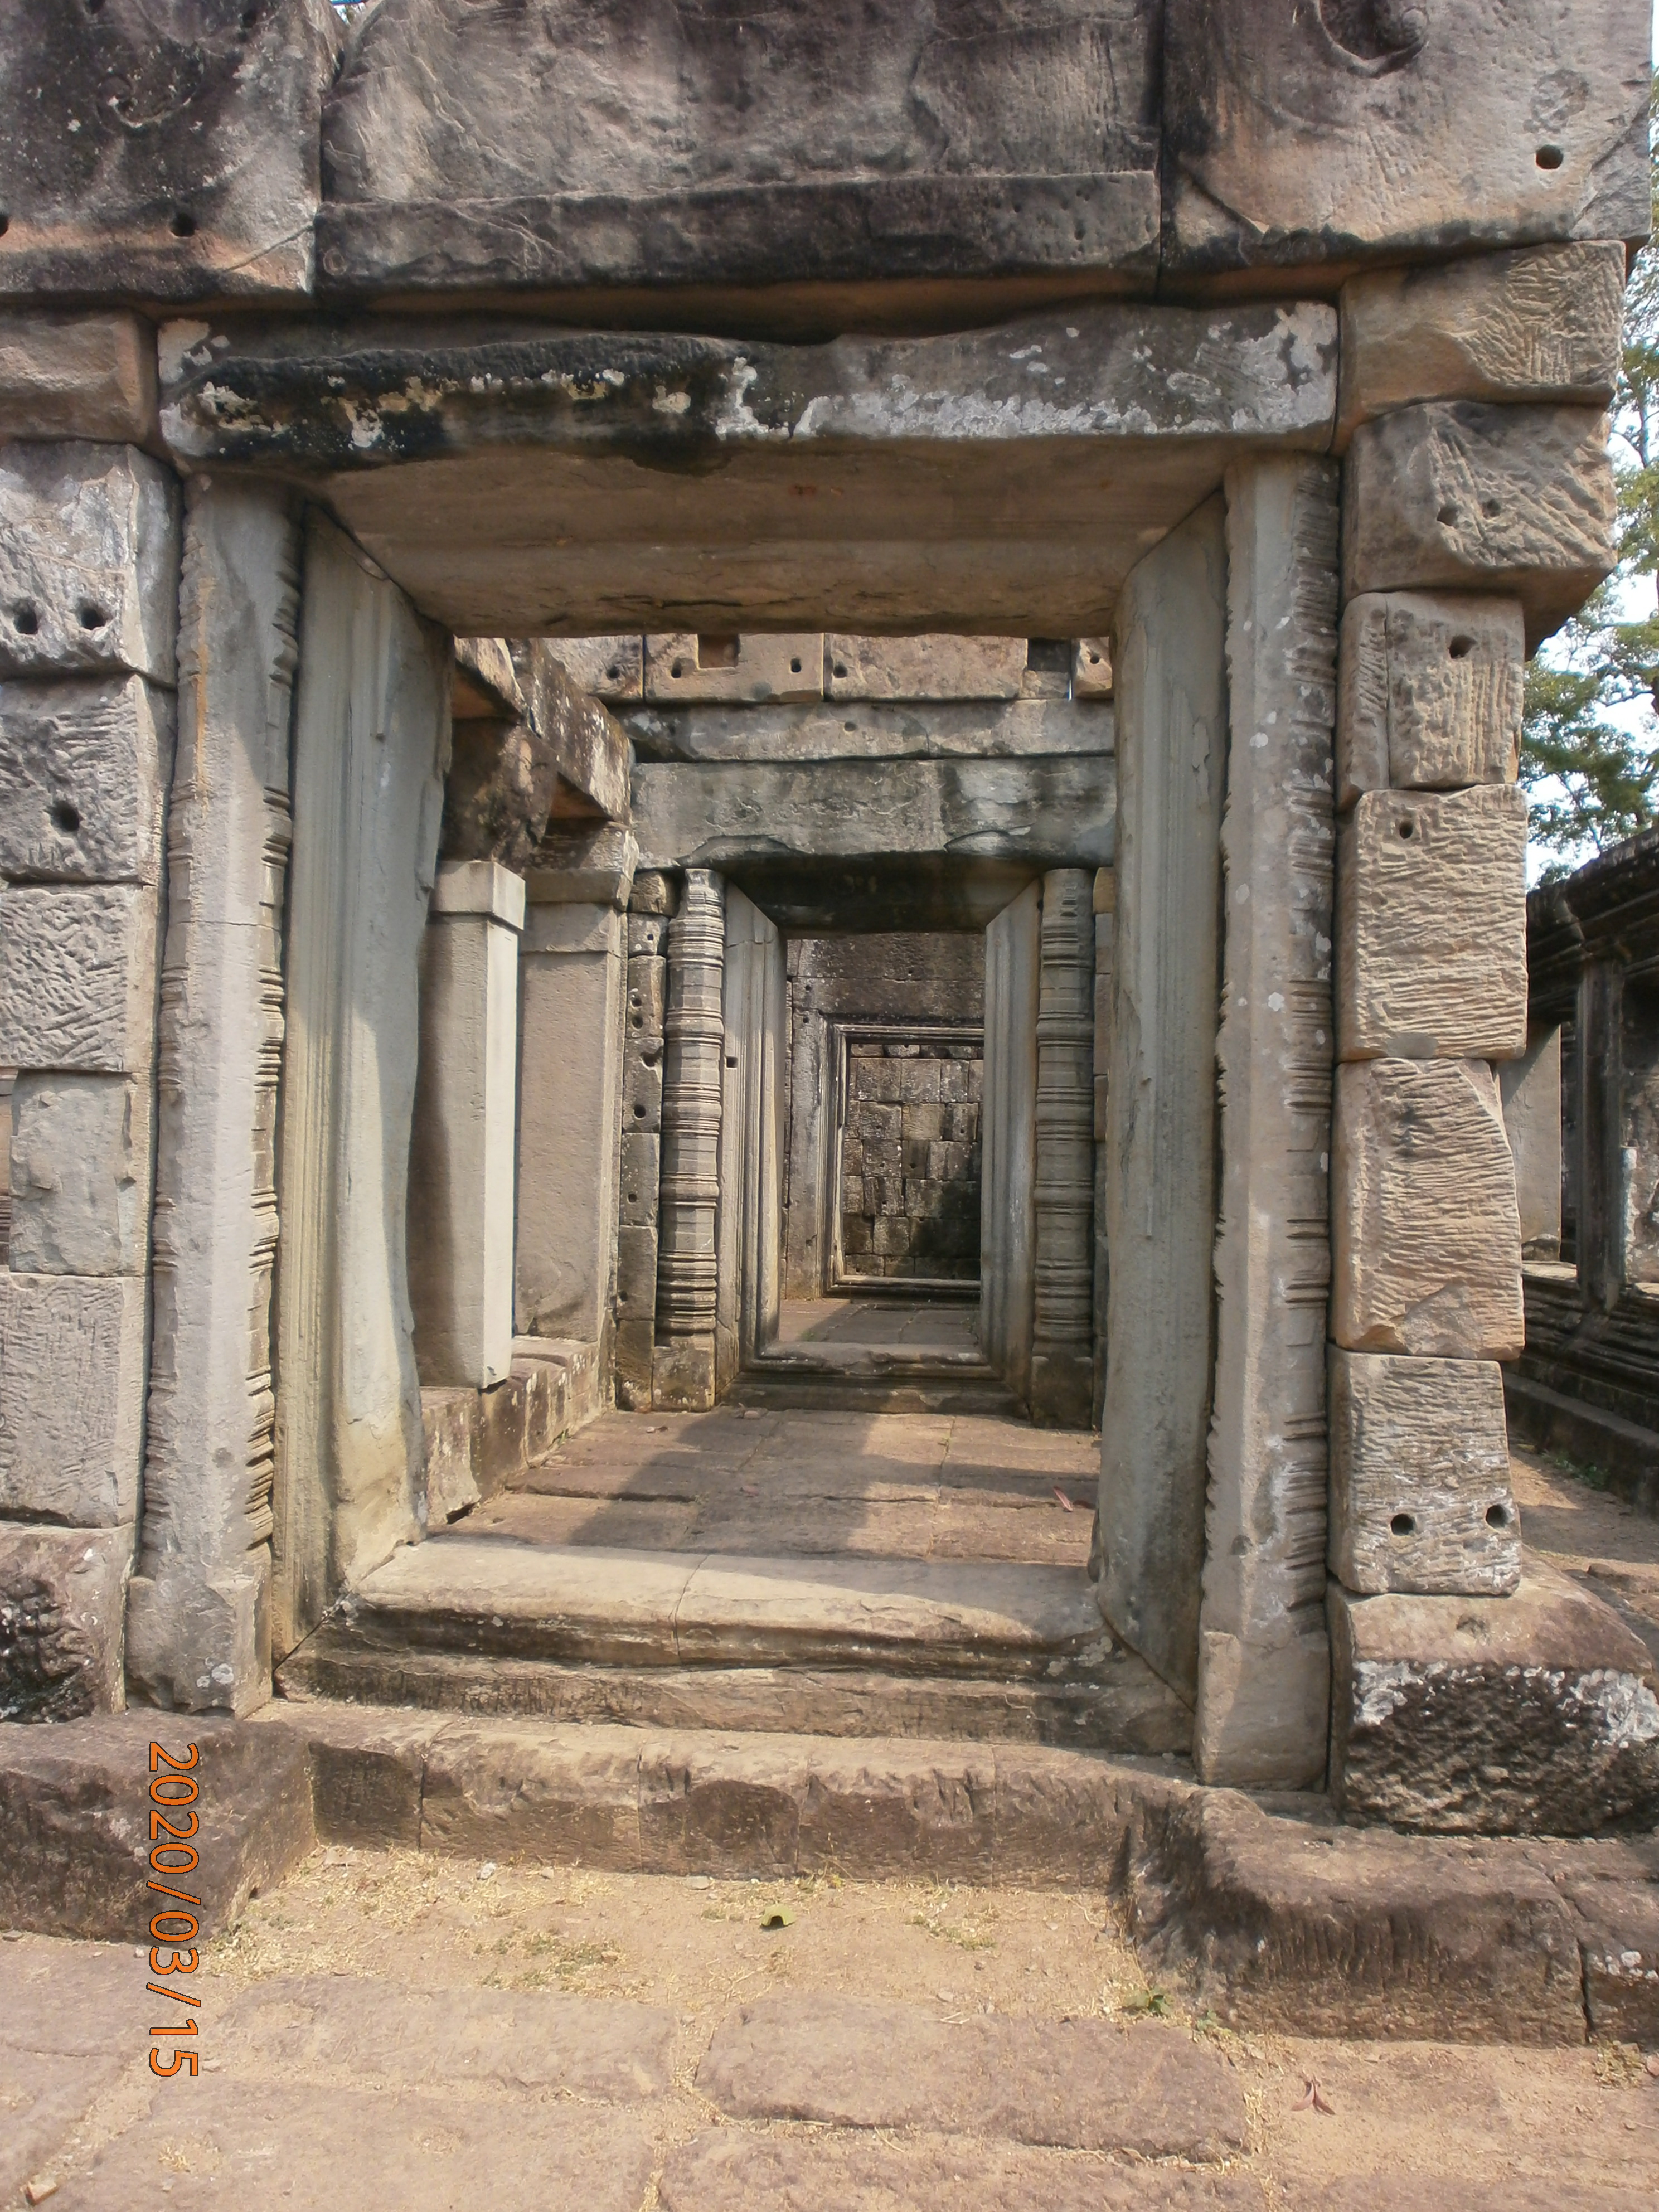 Angkor_Wat